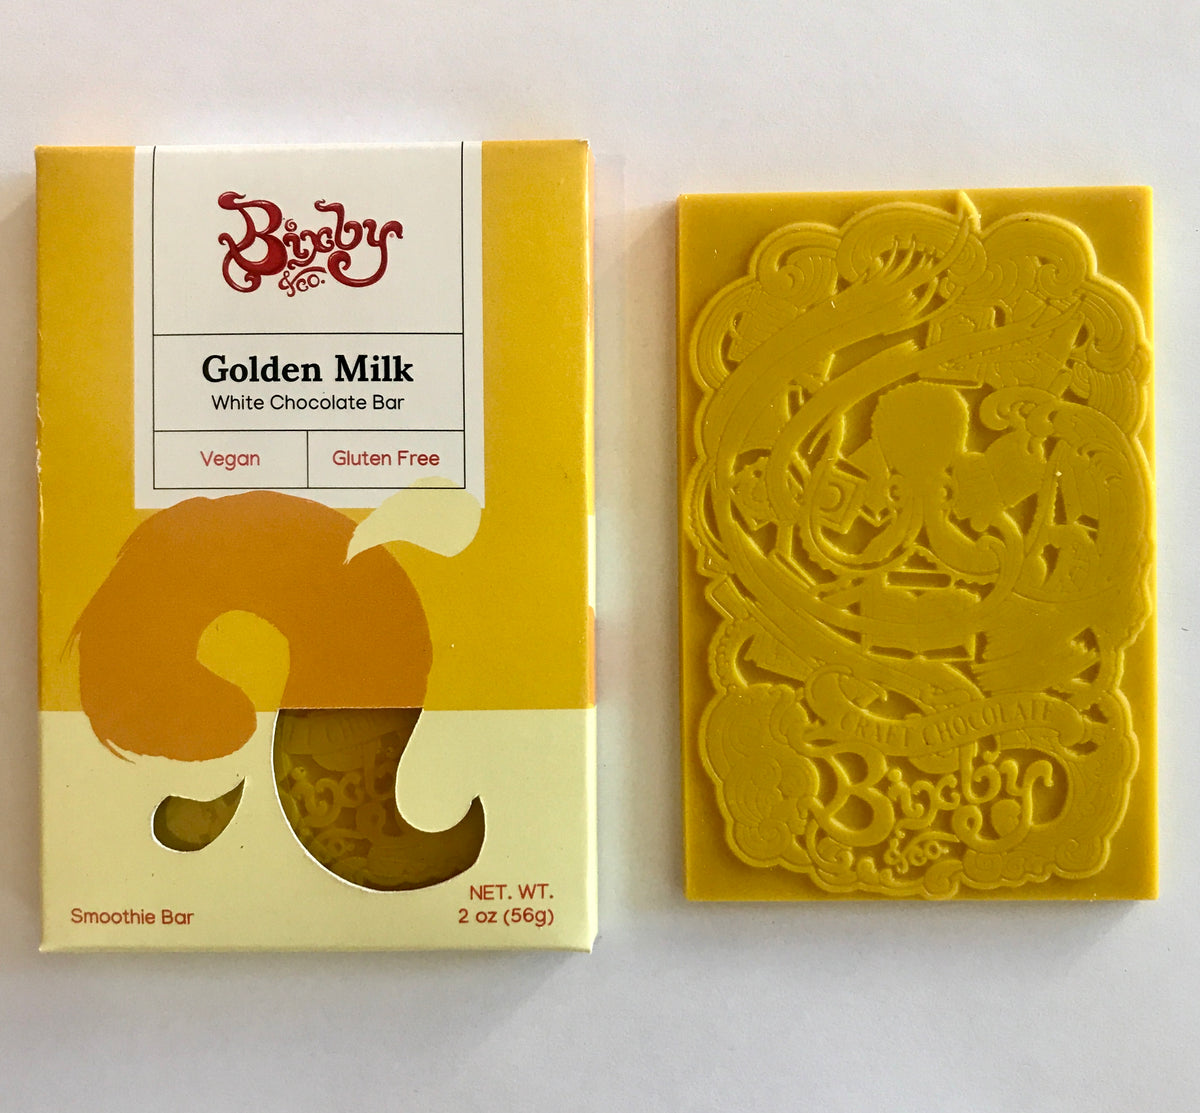 Golden Milk White Chocolate Bar